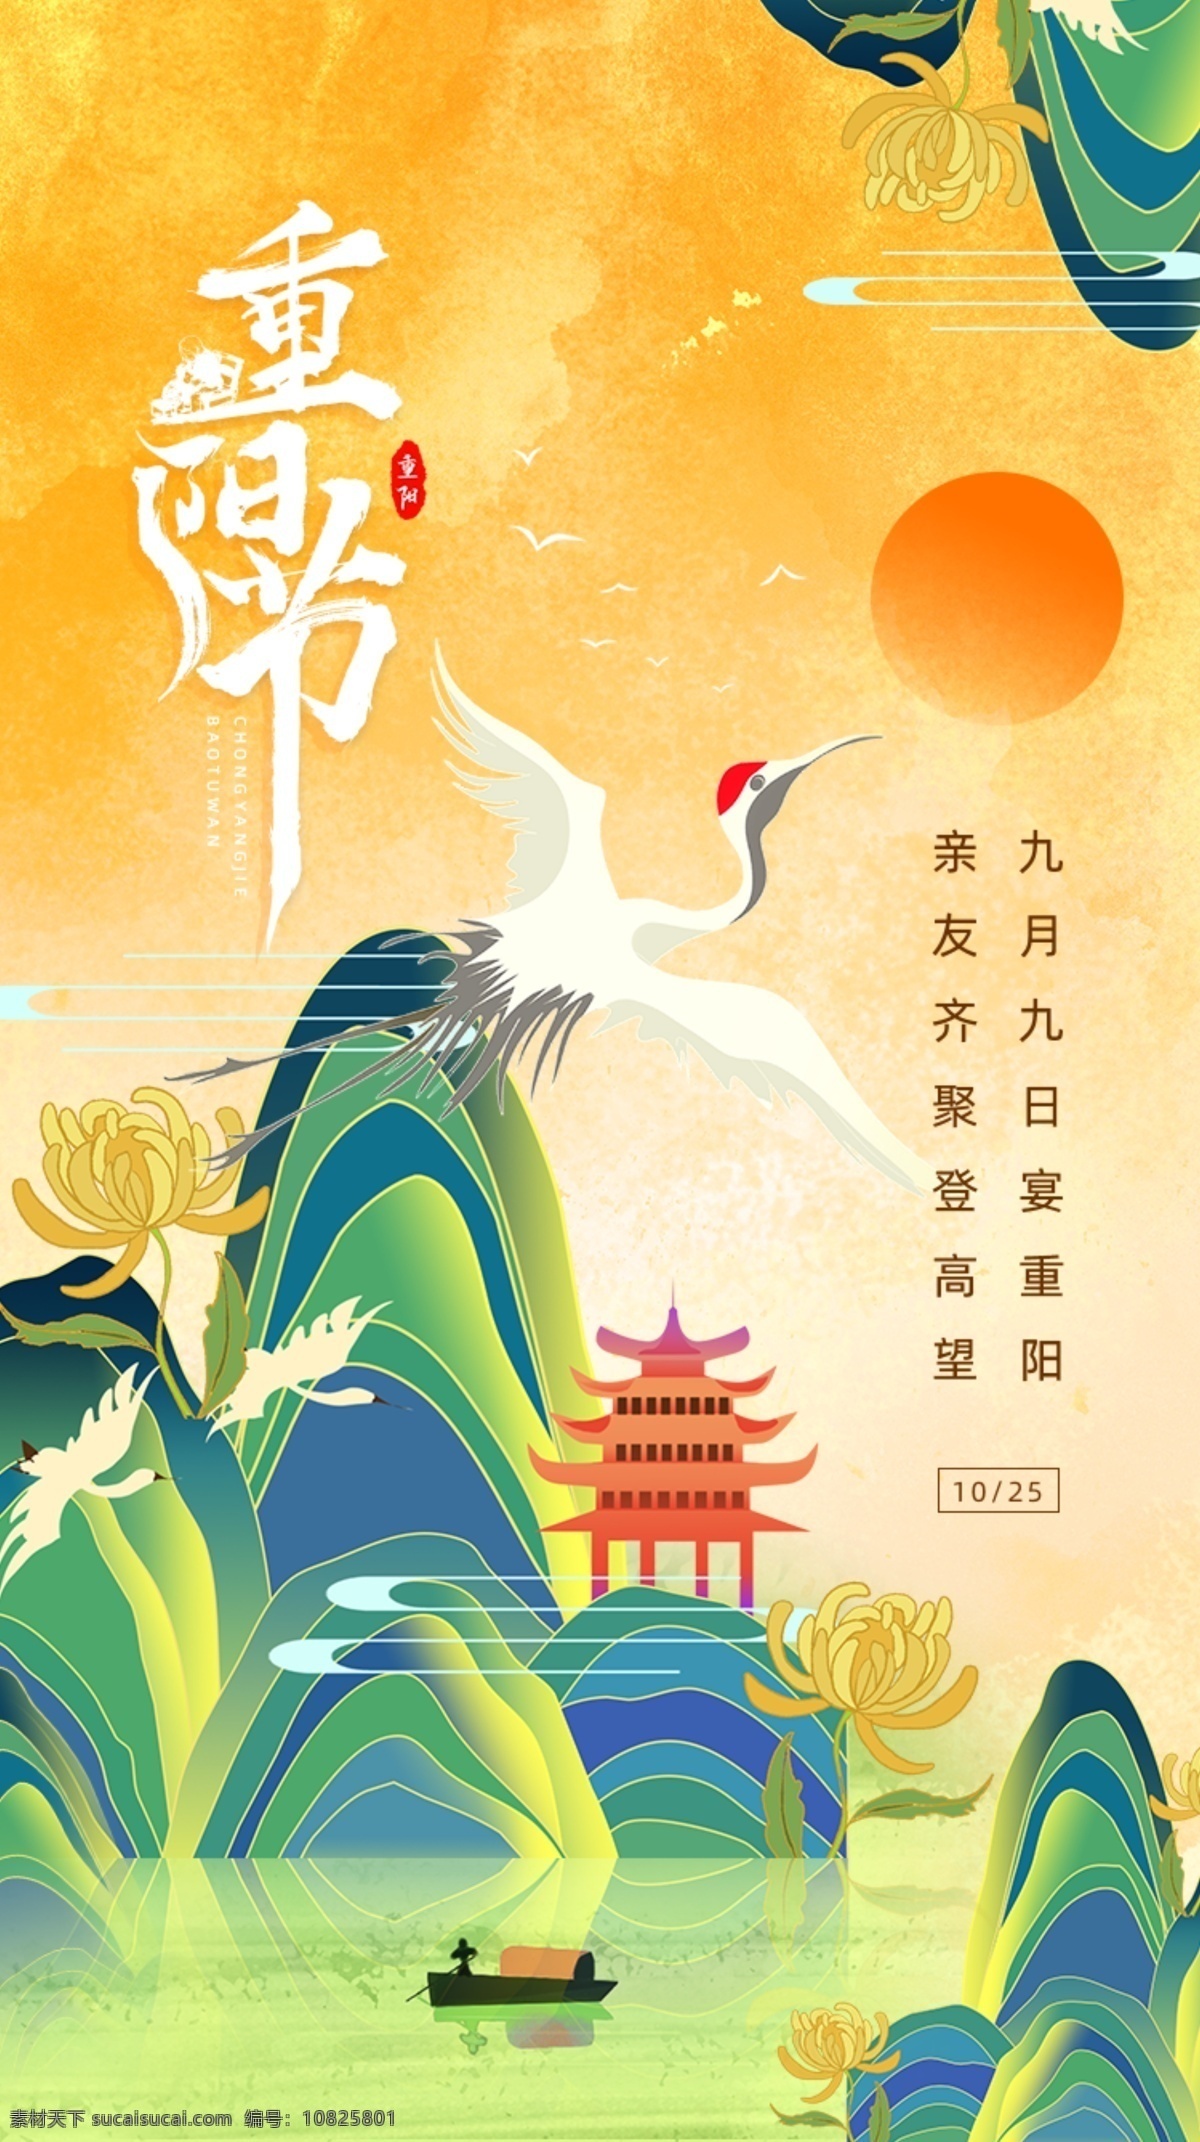 彩色 插画 传统节日 重阳节 手机 海报 传统 节日 启动页 vi设计